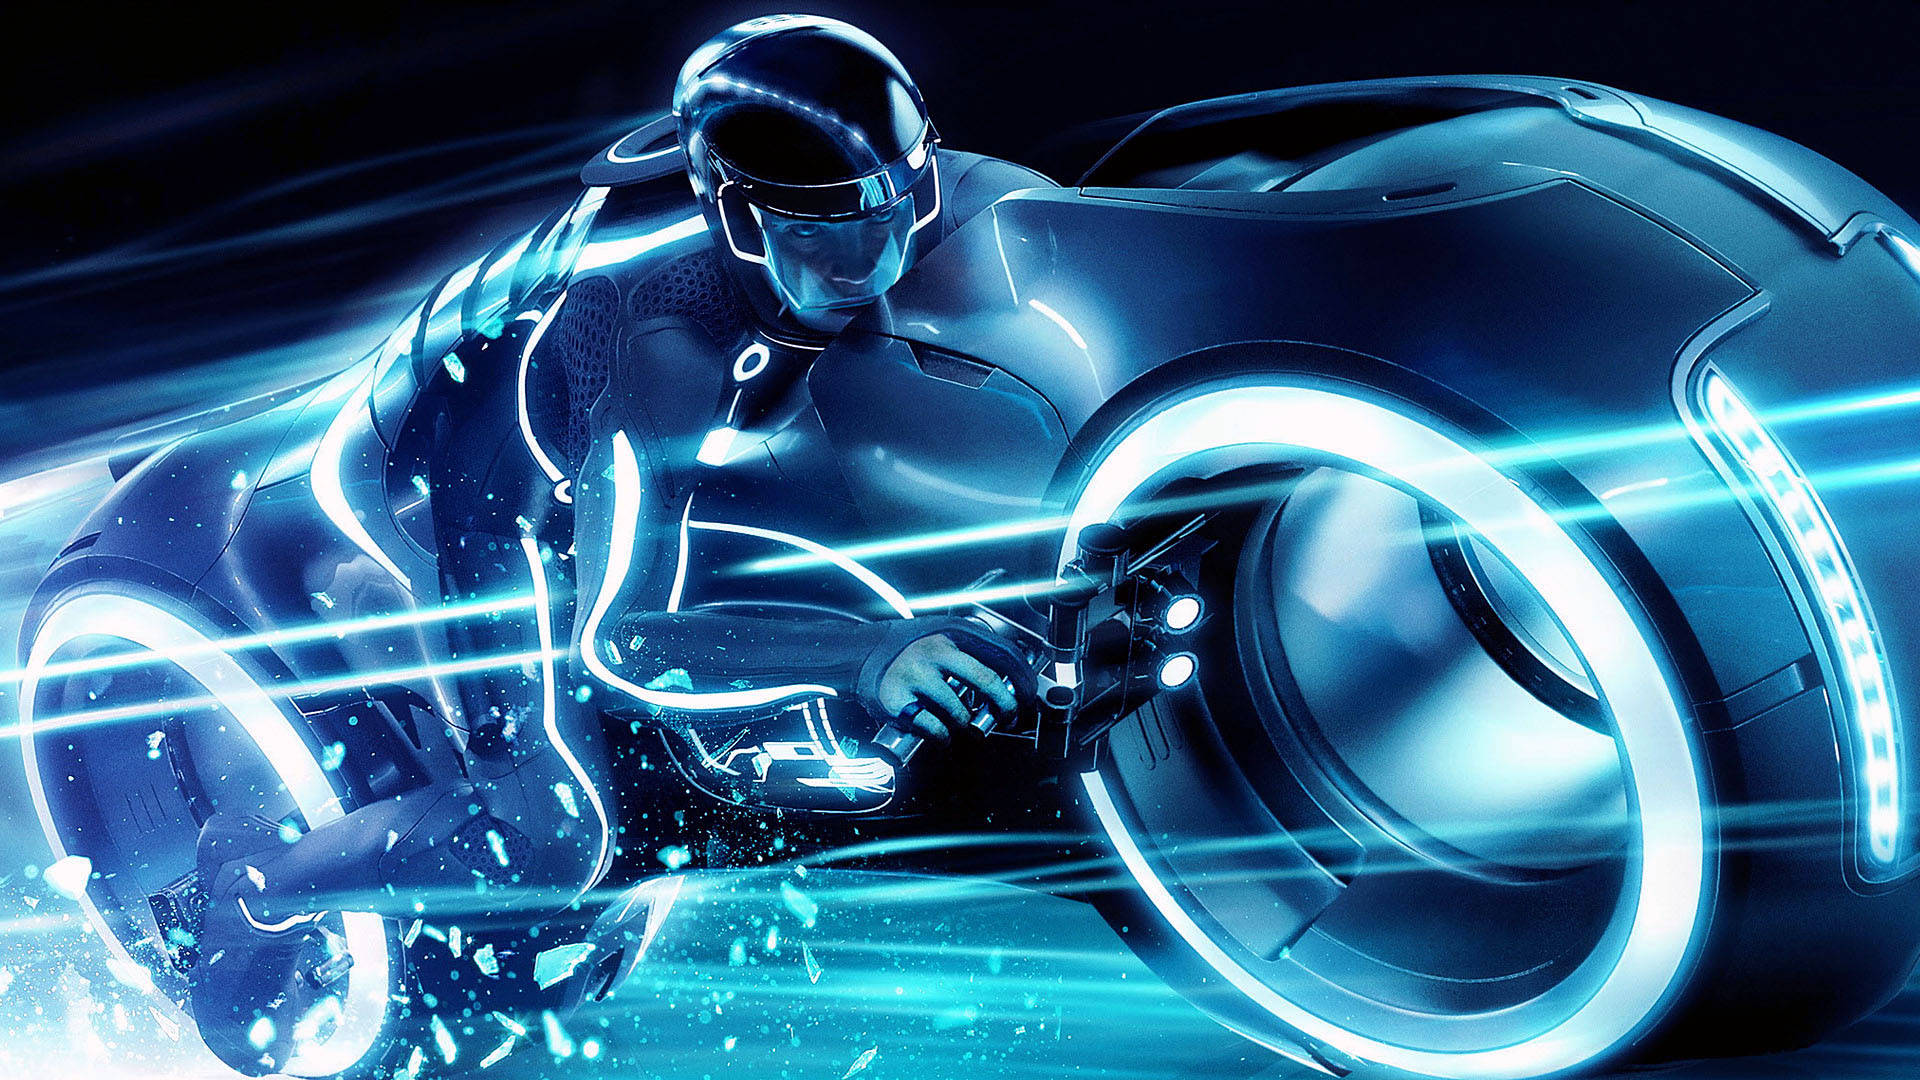 Einmann Fährt Auf Einem Motorrad Mit Blauem Licht. Wallpaper